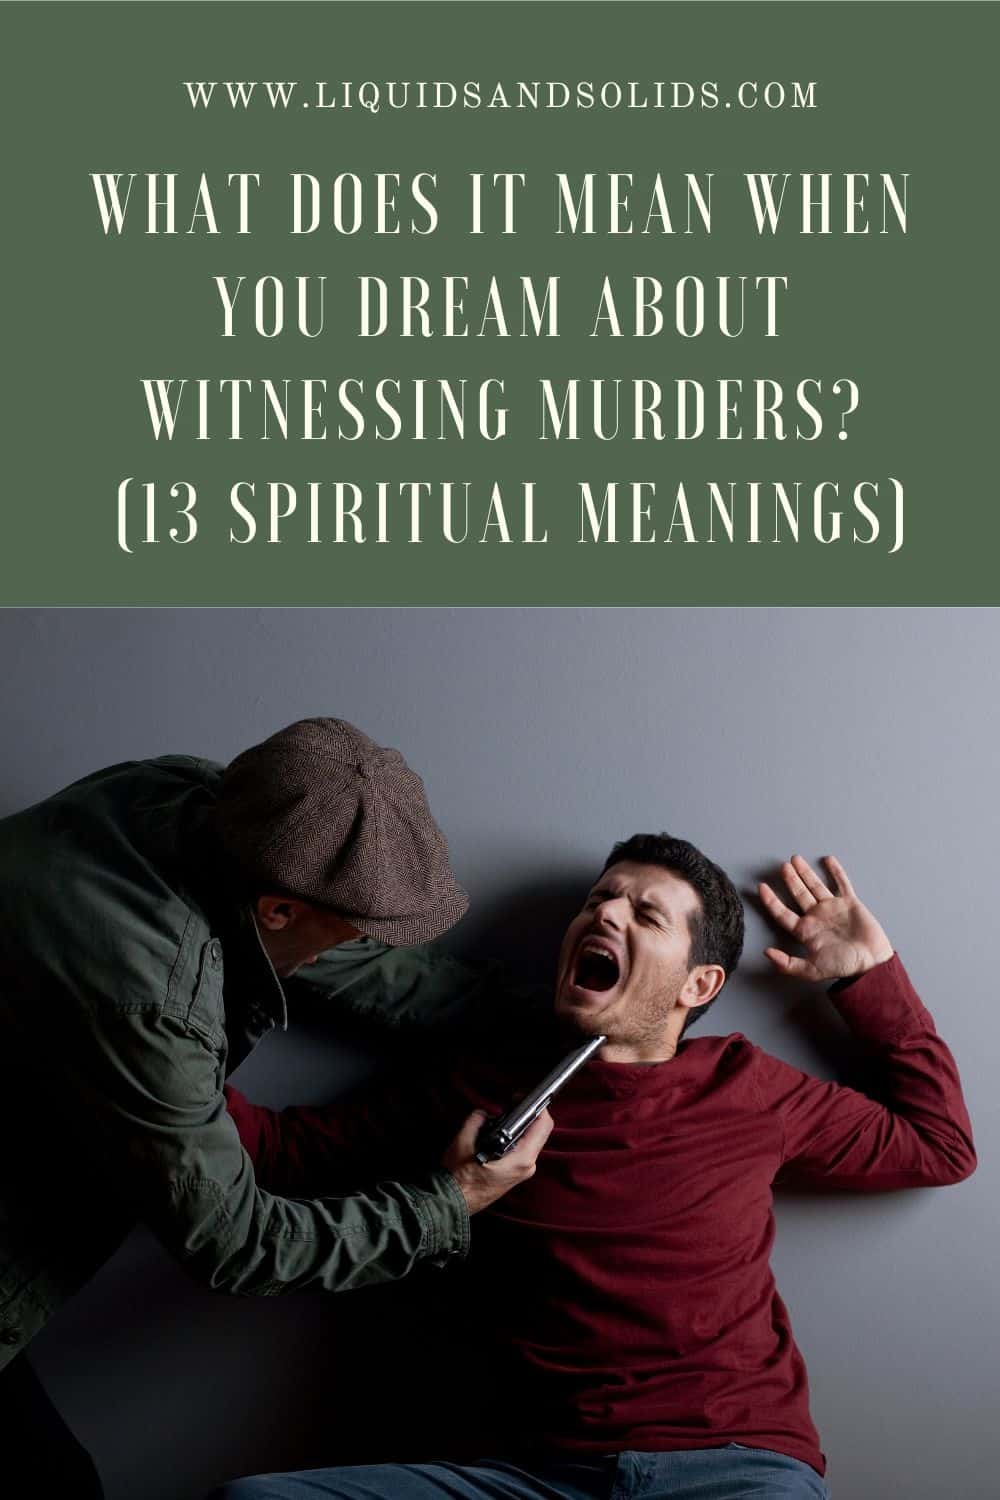  Rêve d'être témoin de meurtres